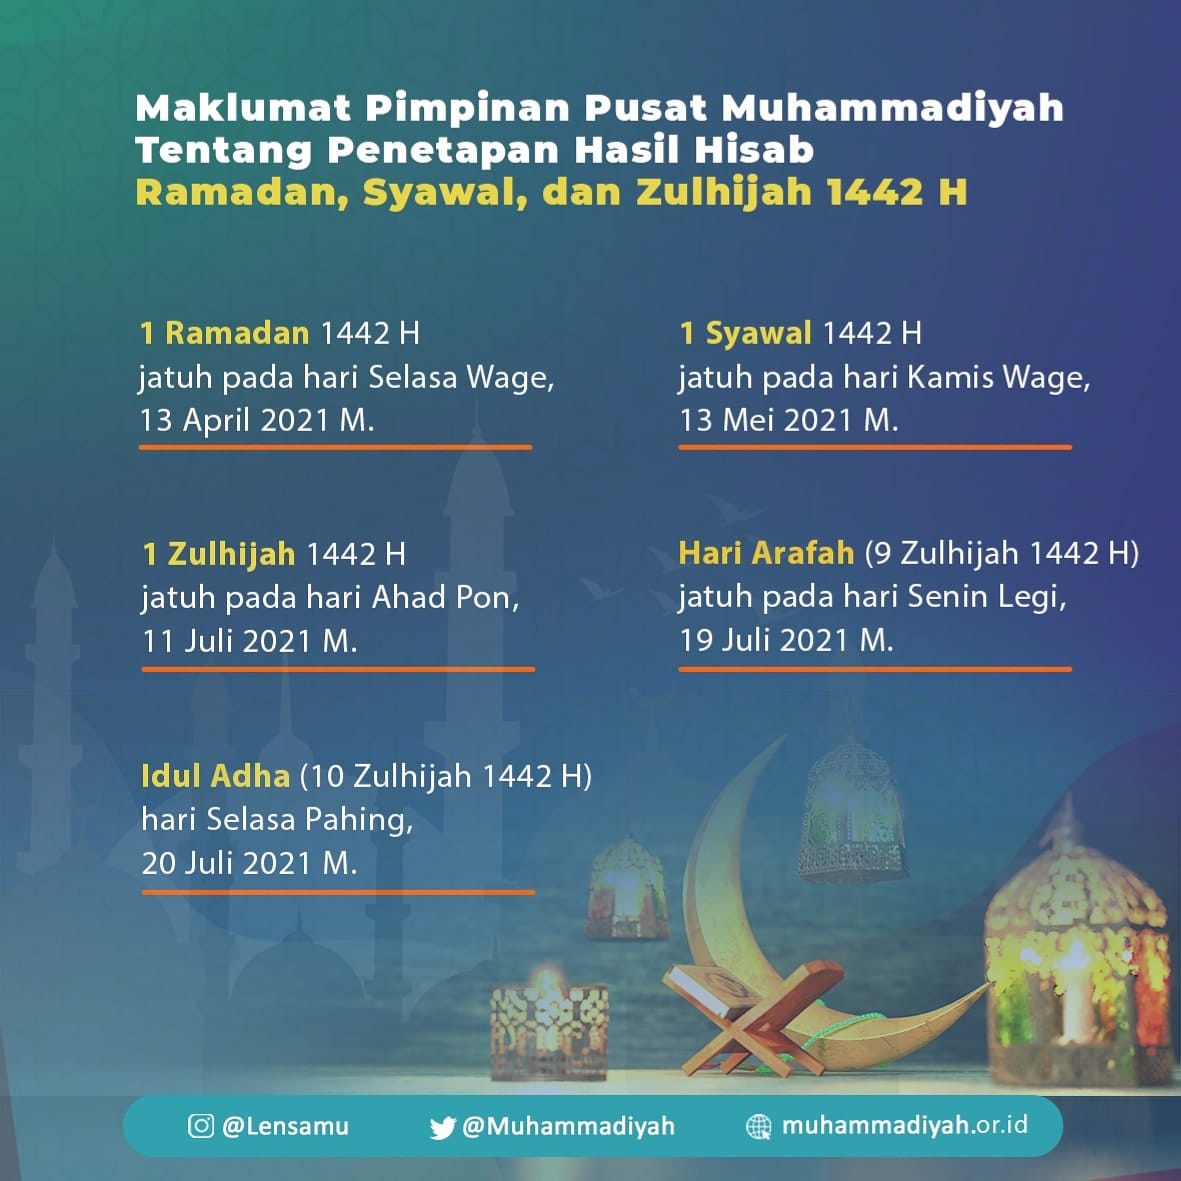 Rangkuman penetapan 1 Ramadan 1442 H, Idul Fitri dan Idul Adha 1442 H oleh PP Muhammadiyah berdasarkan hisab.